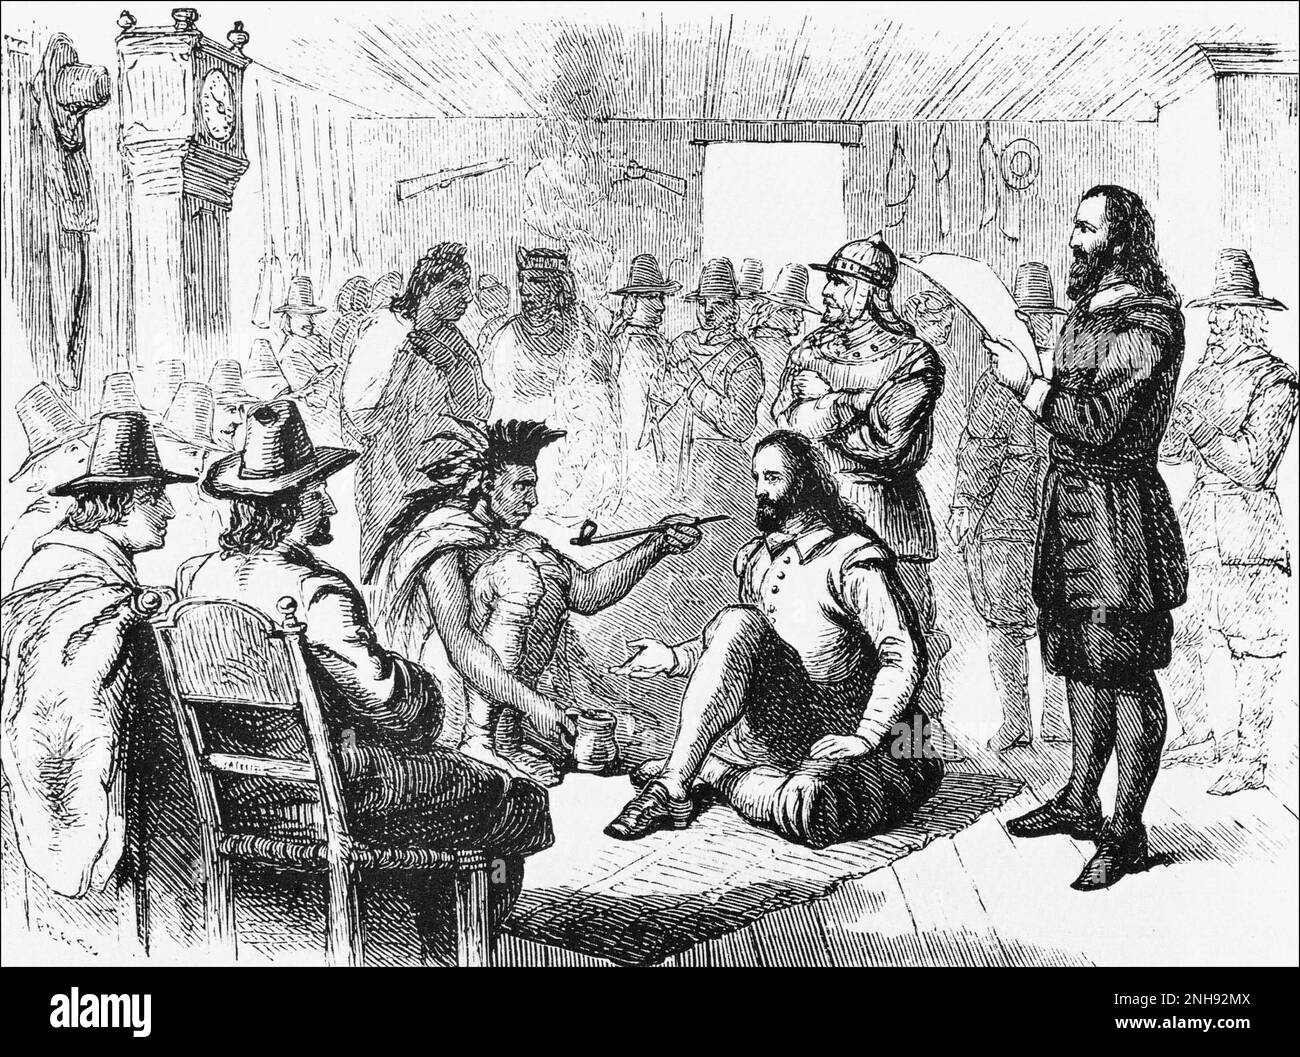 Der Wampanoag-Führer Massasoit (ca.1581-1661) raucht mit dem Plymouth-Gouverneur John Carver eine Friedenspfeife, nachdem er 1621 einen Vertrag unterzeichnet hatte. Gravur von vor 1898. Stockfoto